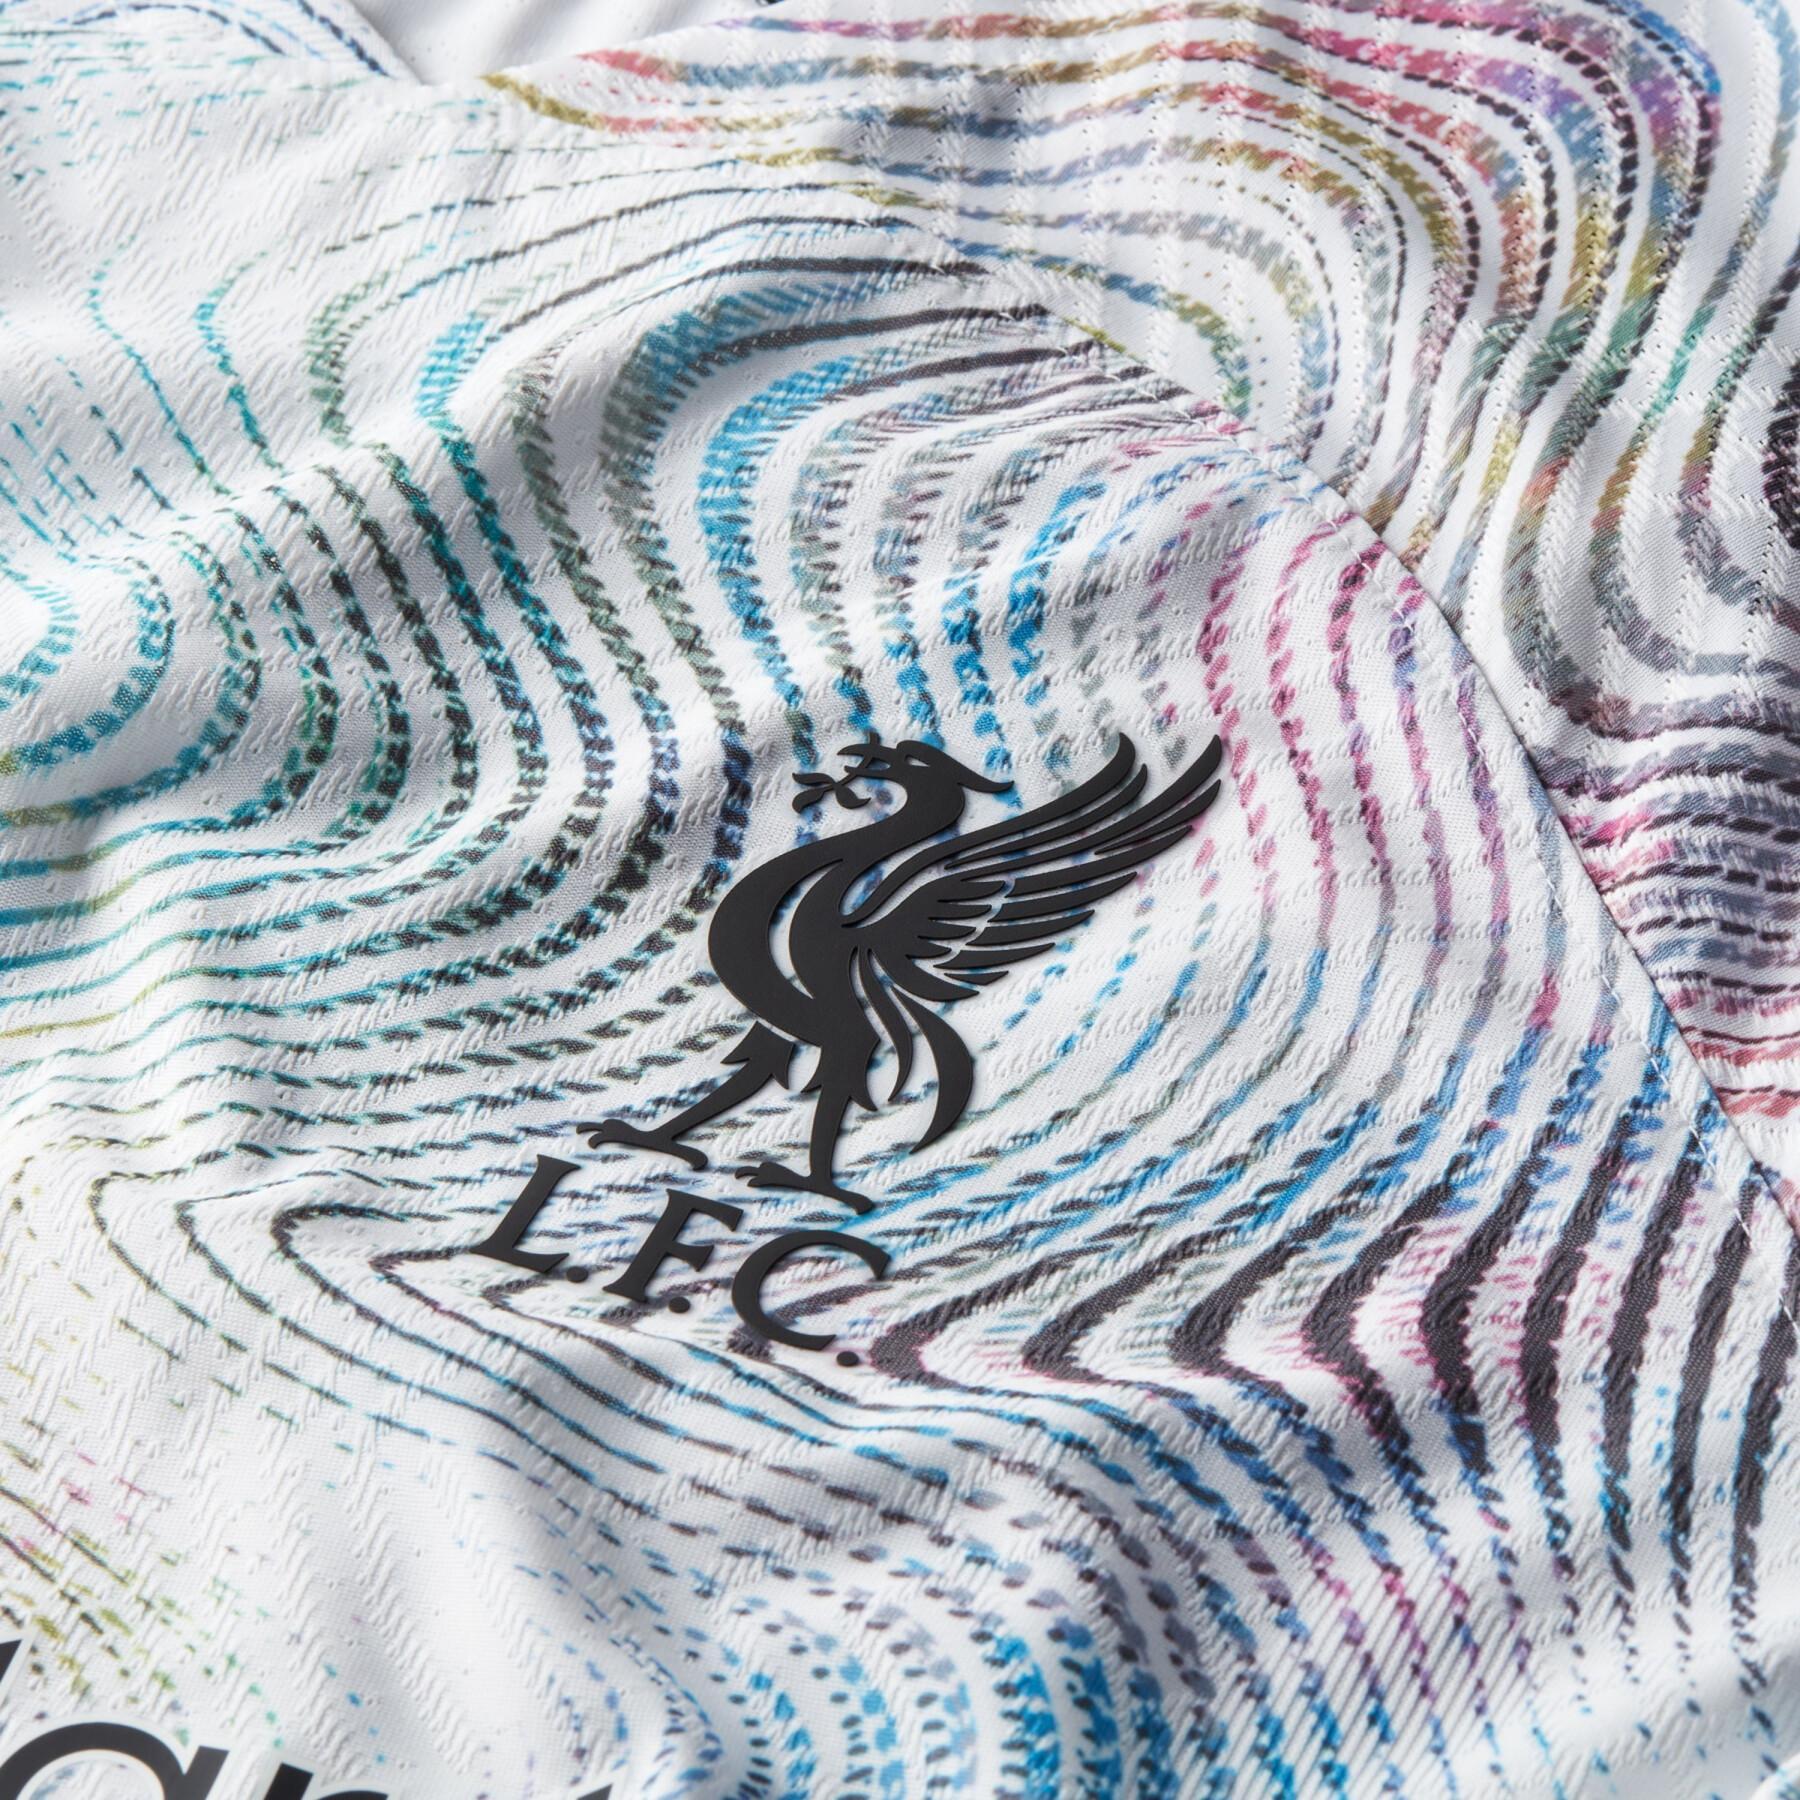 Autentyczna koszulka wyjazdowa Liverpool FC